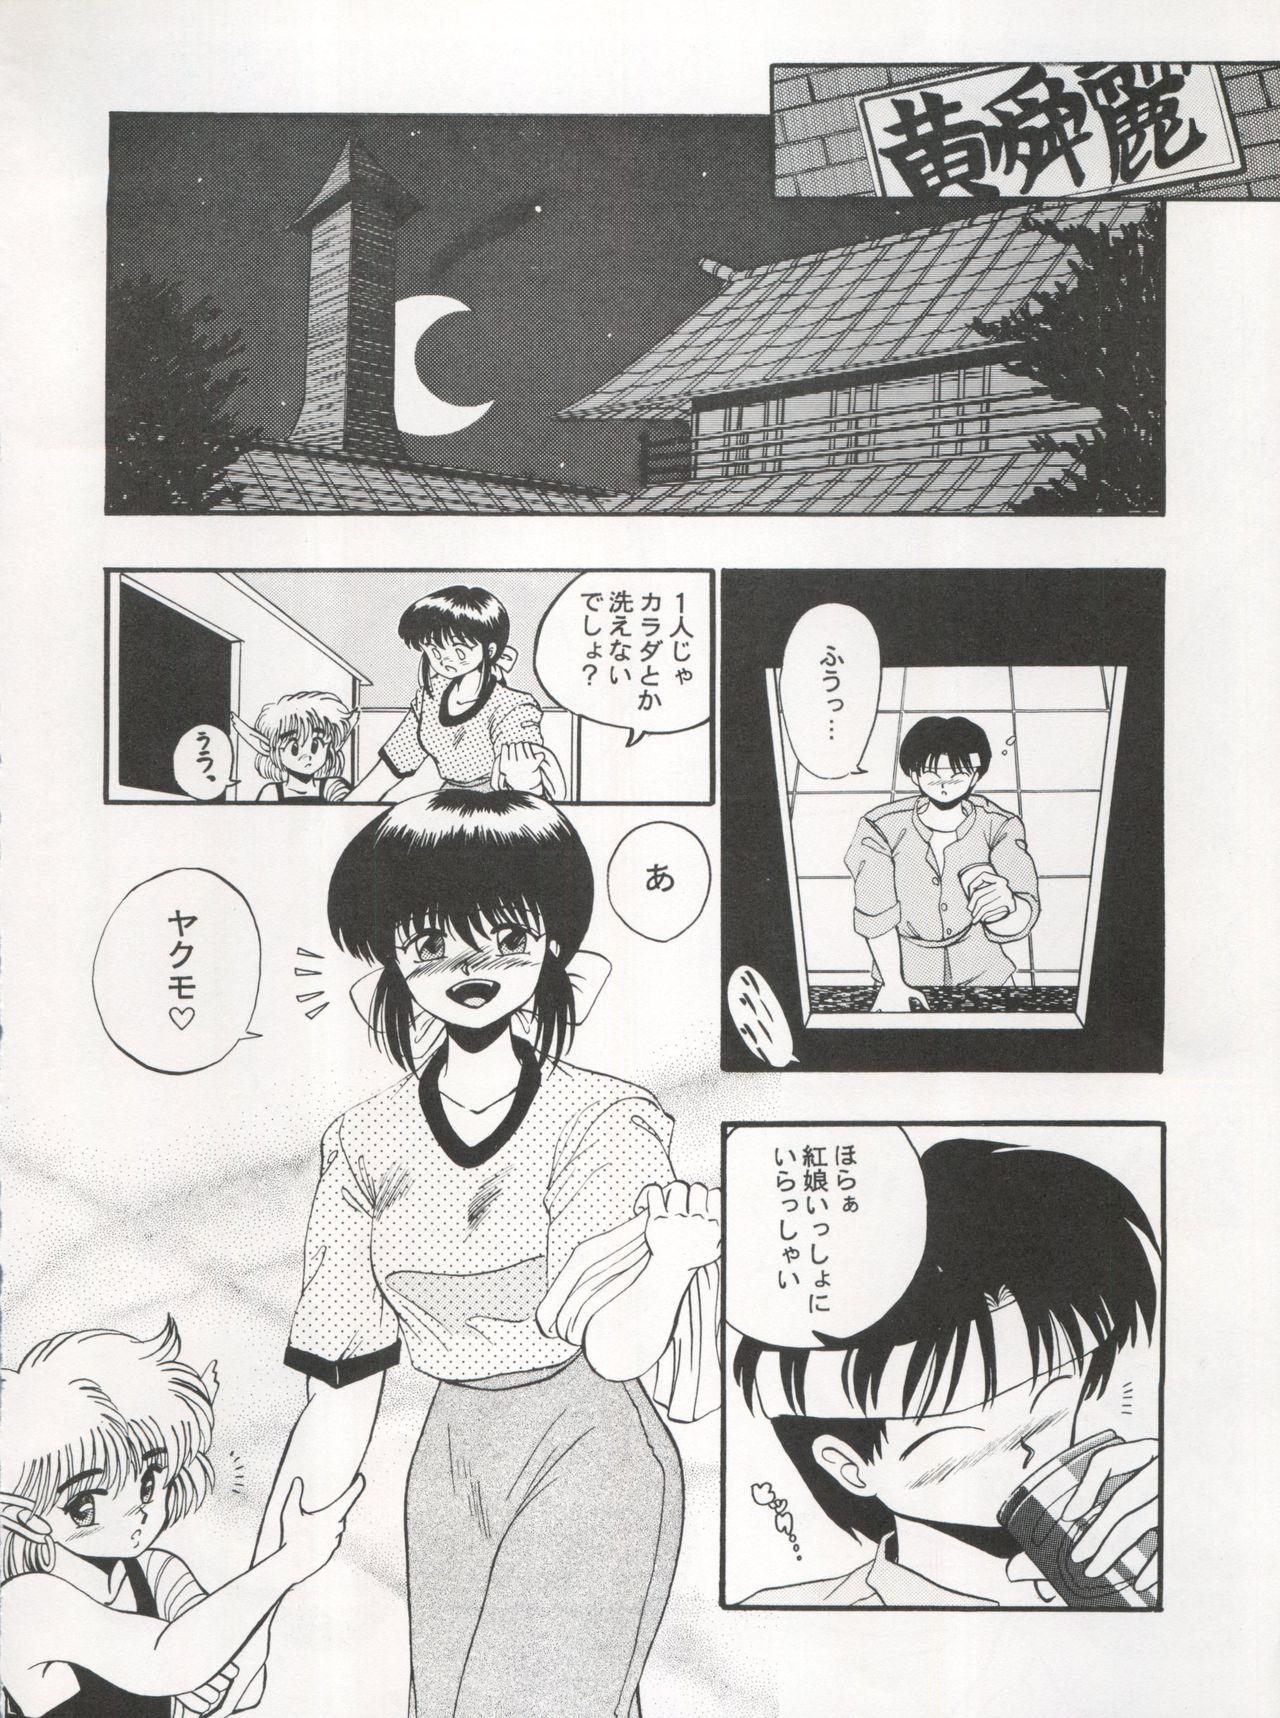 Amateursex 逮捕されちゃうぞ - Fushigi no umi no nadia Youre under arrest Minky momo 3x3 eyes India - Page 12